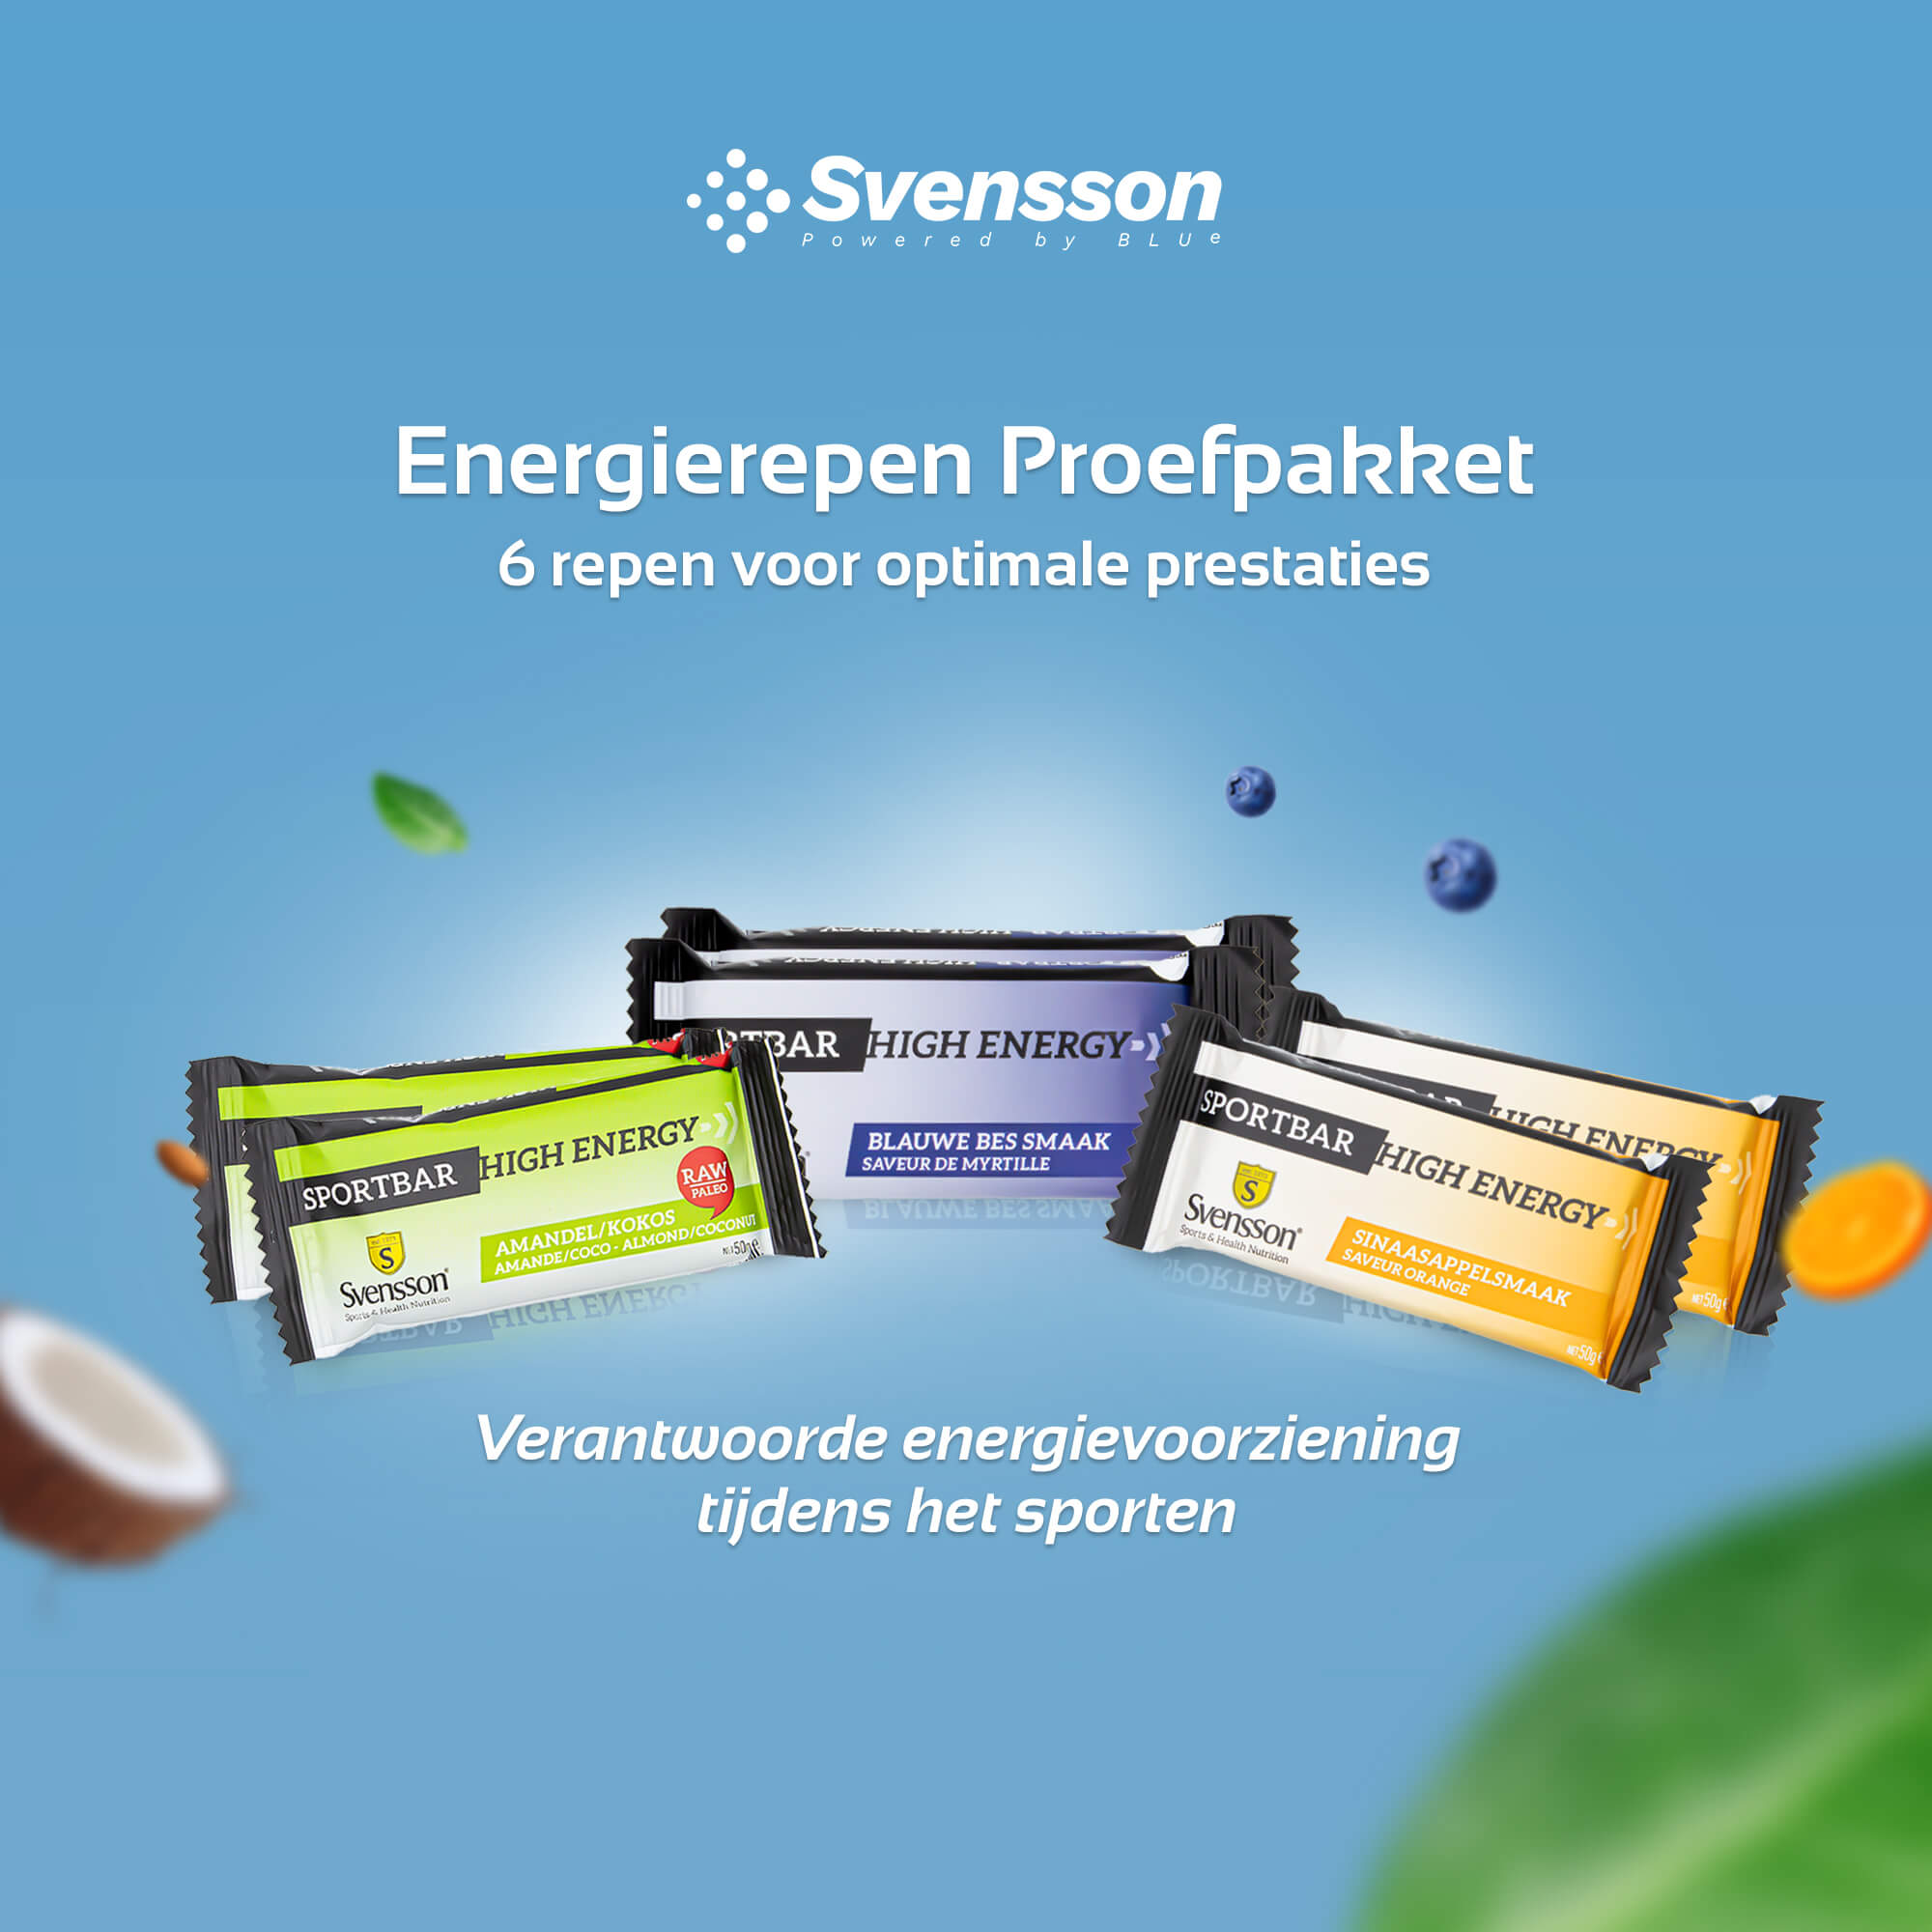 Verantwoorde energievoorziening met de Svensson energierepen